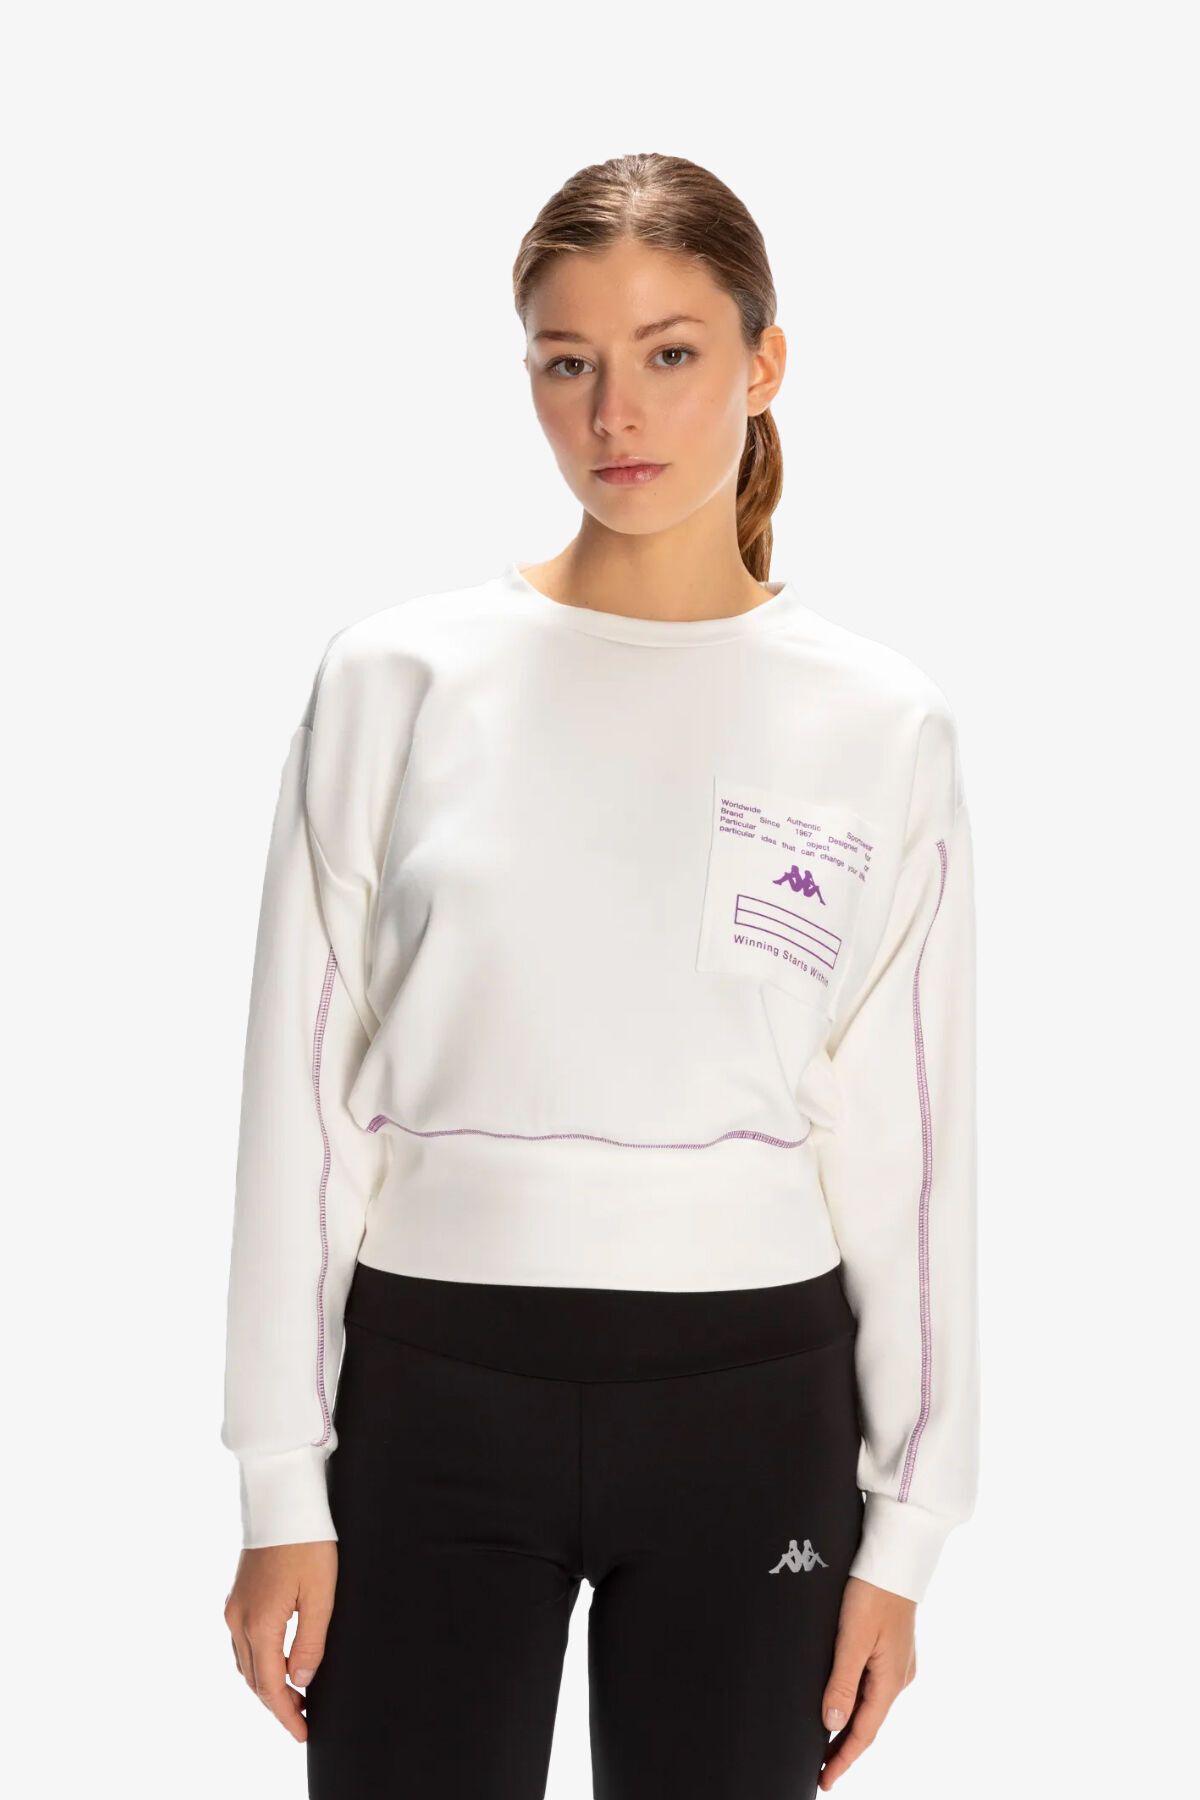 Kappa Authentıc Kage Kadın Beyaz Sweatshirt 351Q66W-001